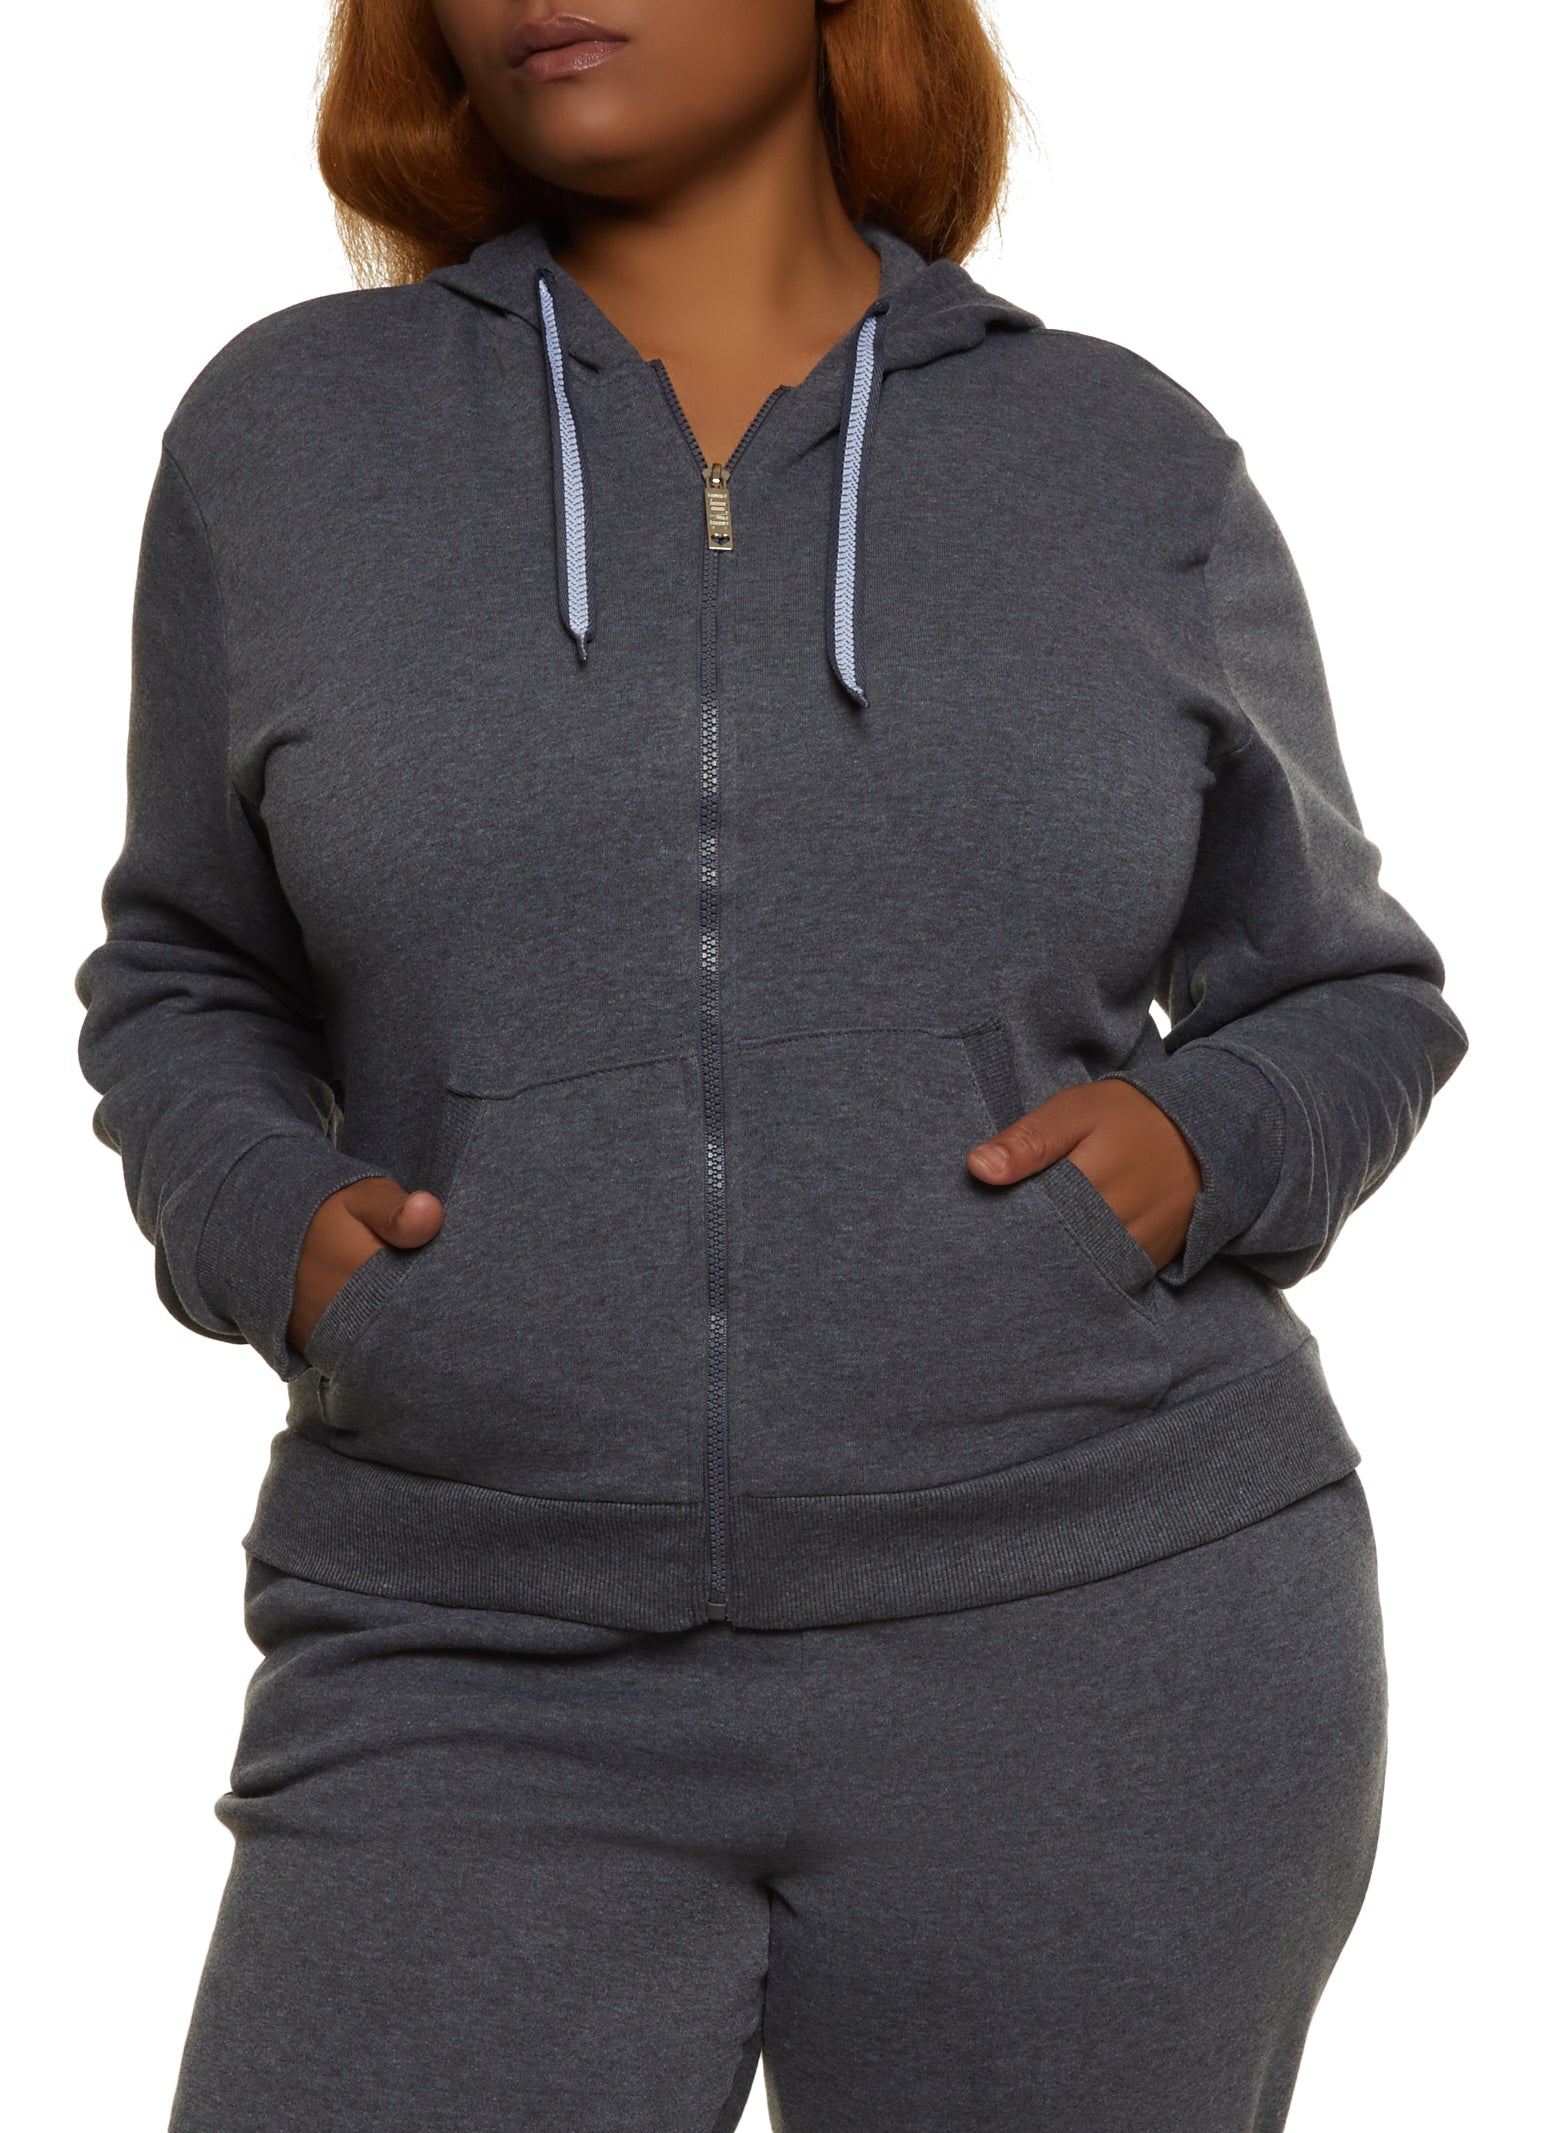 Womens Plus Size Fleece Zip Front Hoodie, Grey, Size 2X